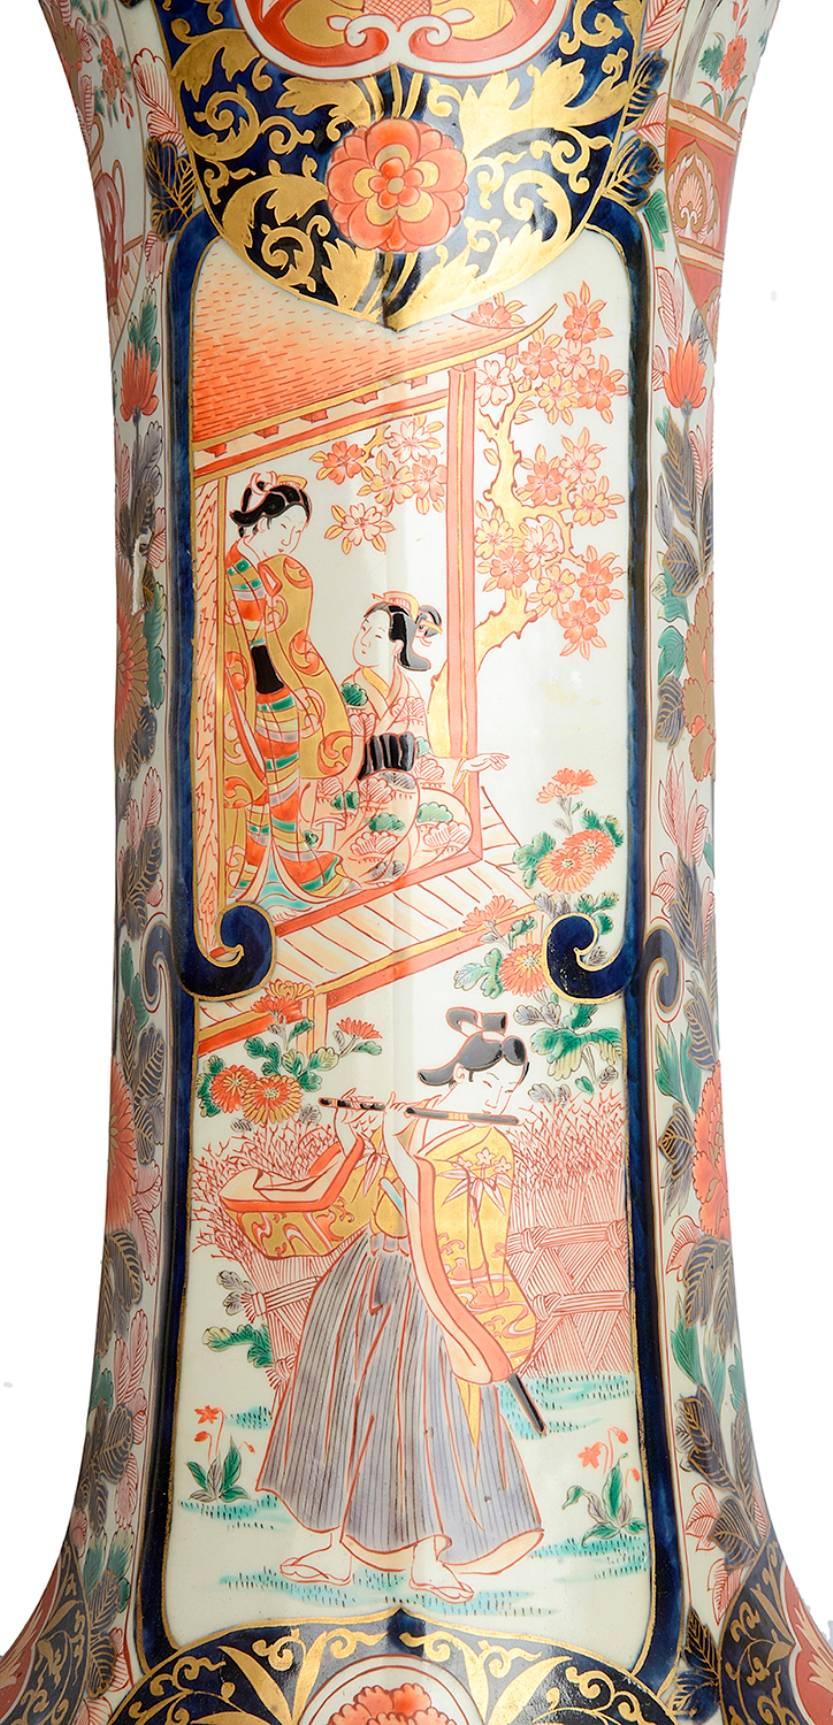 Une grande et impressionnante paire de vases à déversement de style Imari japonais du 18ème siècle. Chacune avec les couleurs classiques Imari de bleus et d'oranges. Le sol est orné de fleurs, de rinceaux, de motifs et de dragons parmi les nuages.